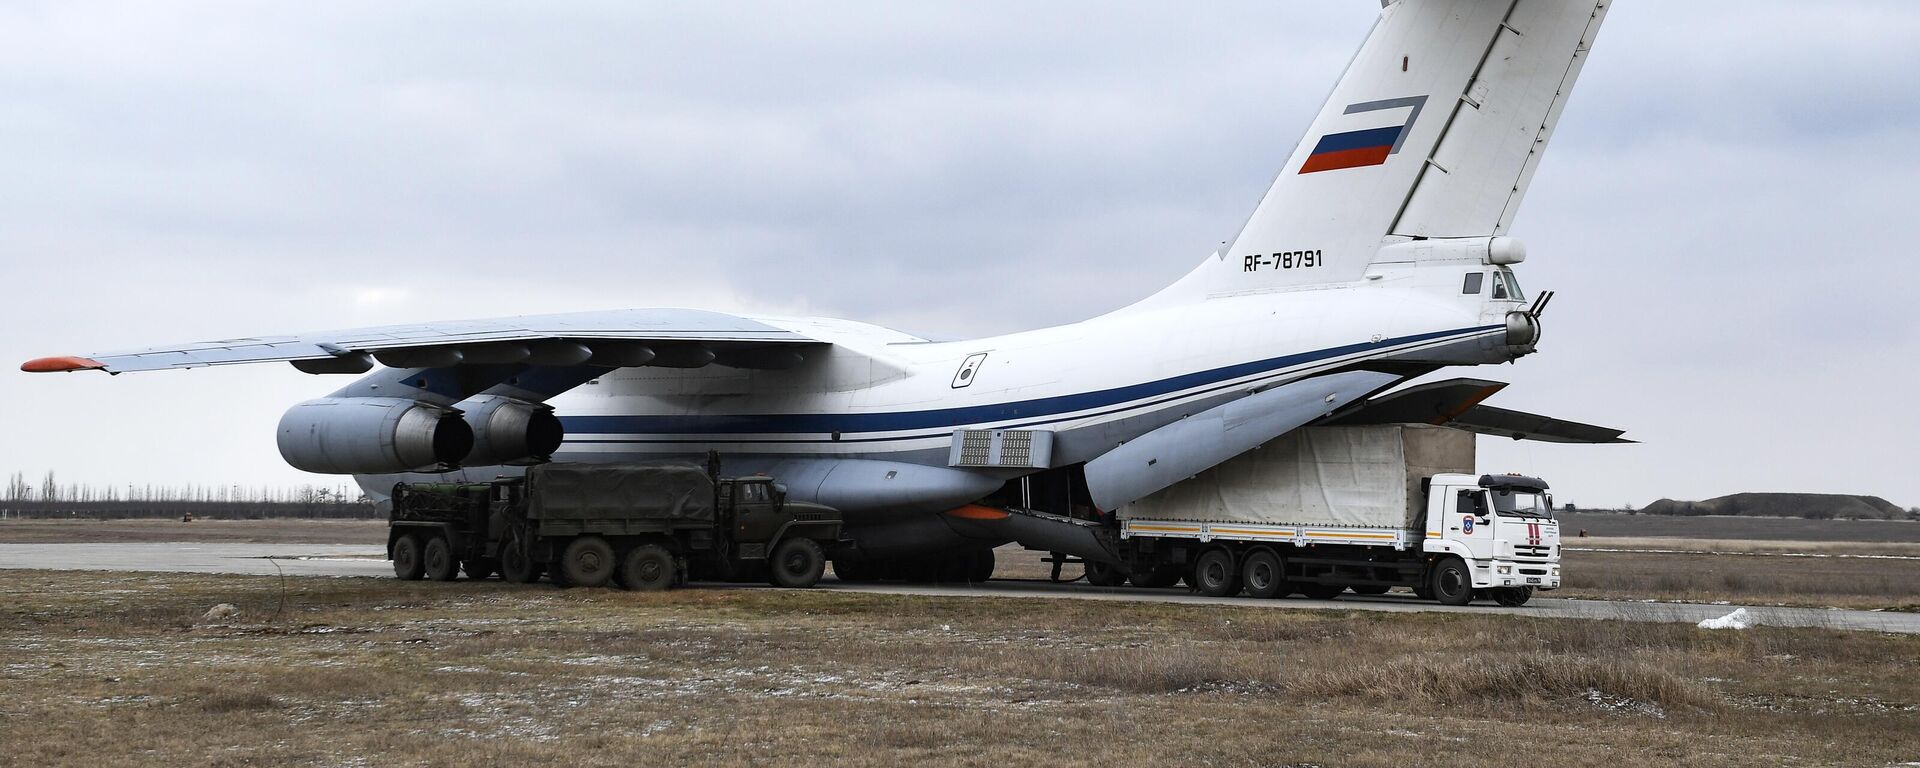 Los aviones Il-76 de la Fuerza Aérea rusa envian más de 70 toneladas de carga humanitaria para los civiles ucranianos - Sputnik Mundo, 1920, 27.03.2022